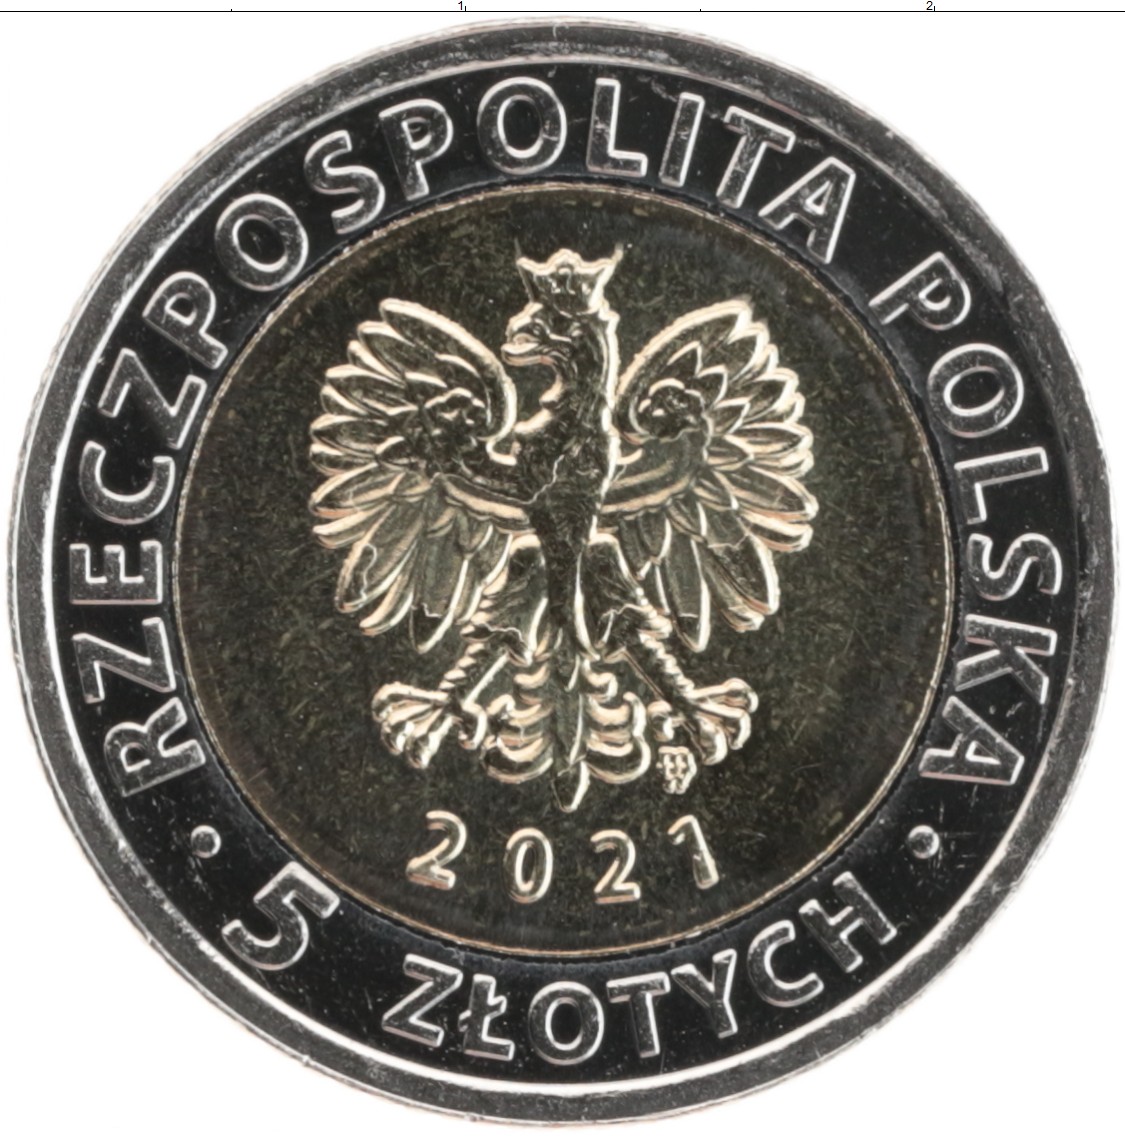 5 злотых в рублях. Польские монеты 2021. 5 Злотых 2022. Польша 5 злотых 2022. Польша 5 злотых набор.